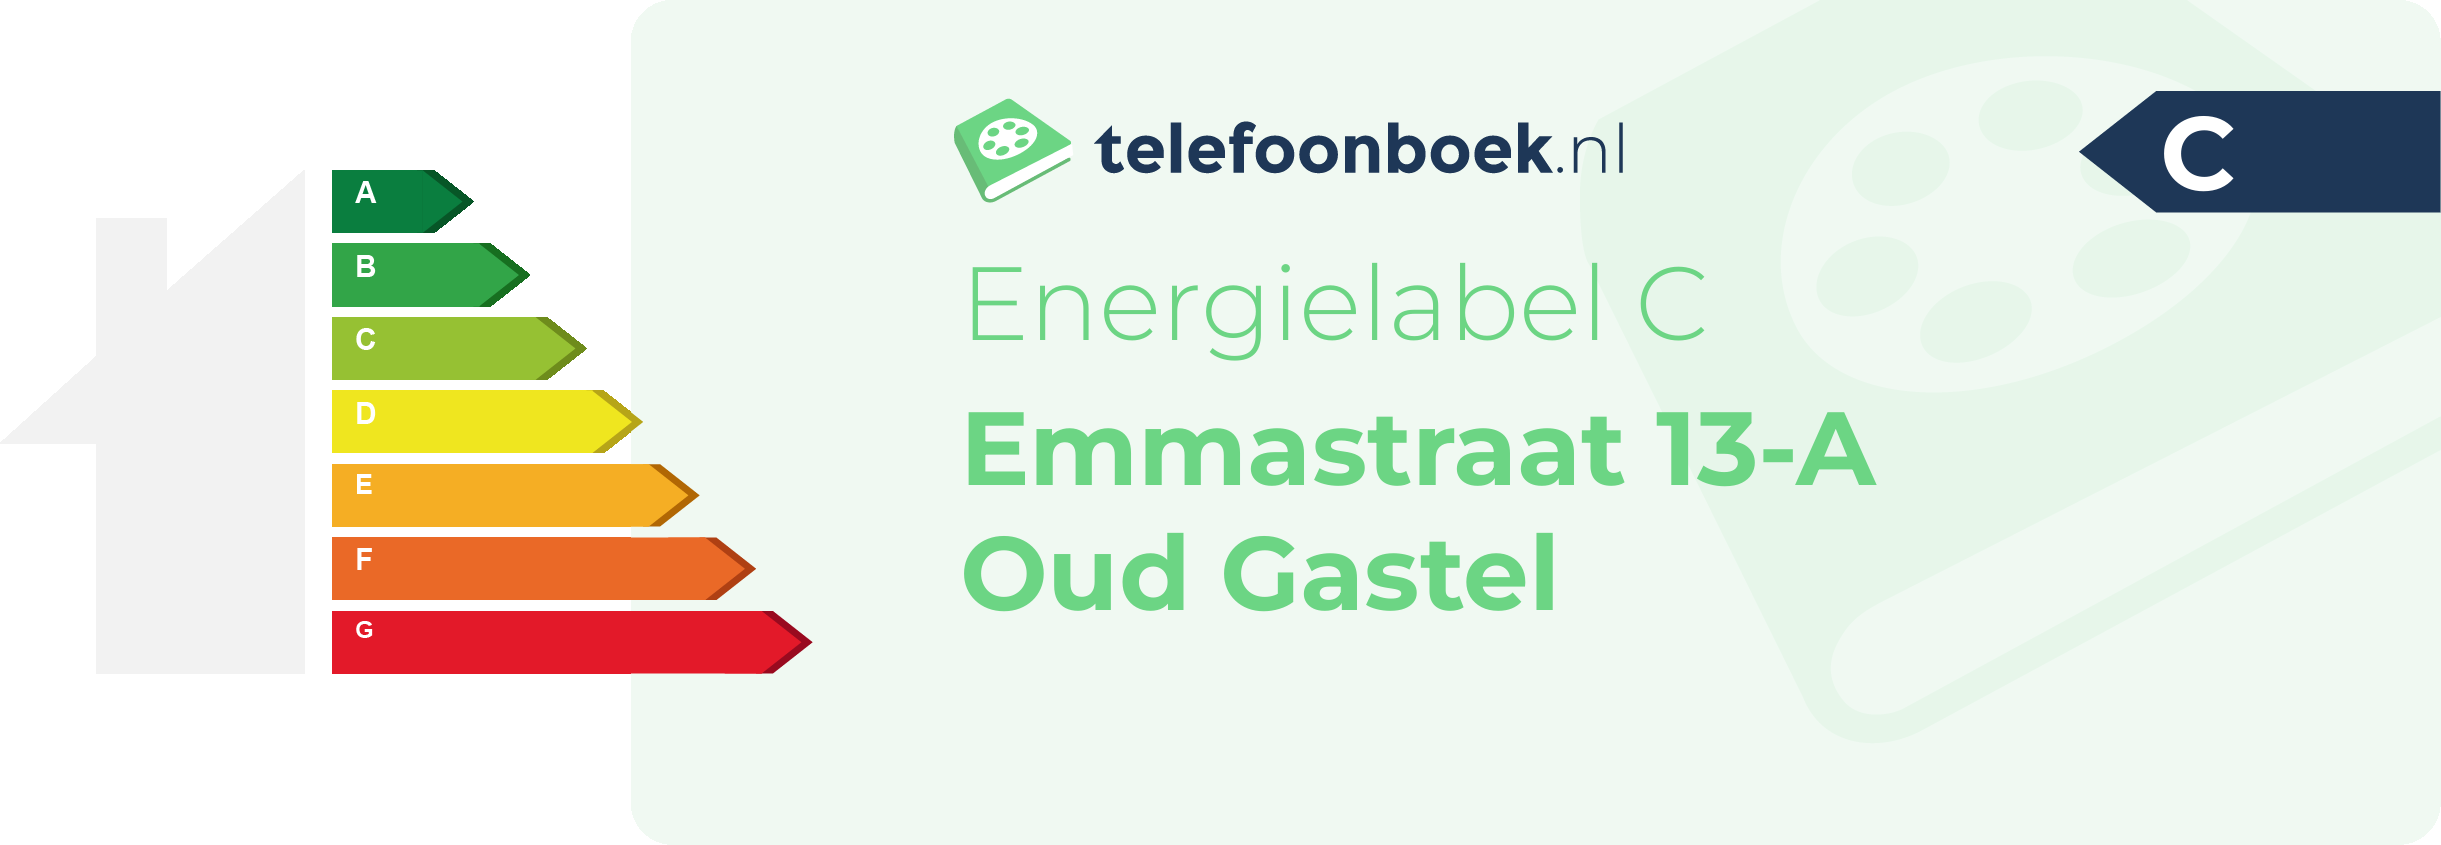 Energielabel Emmastraat 13-A Oud Gastel